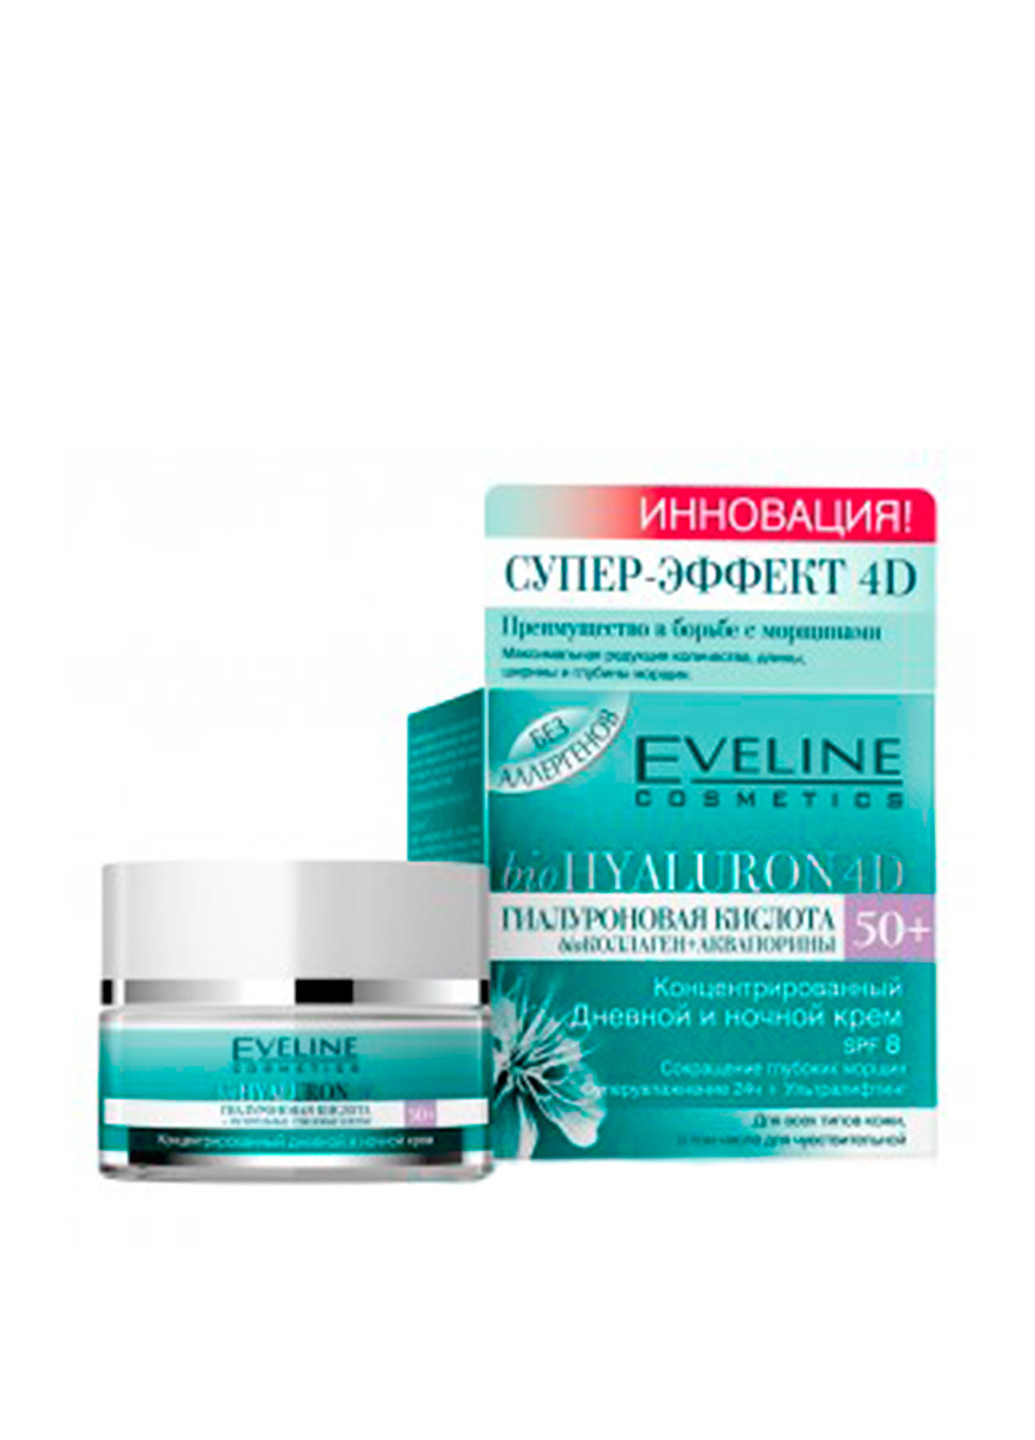 Крем для лица концентрированный дневной и ночной BioHyaluron 4D, 50 мл Eveline Cosmetics (160879843)